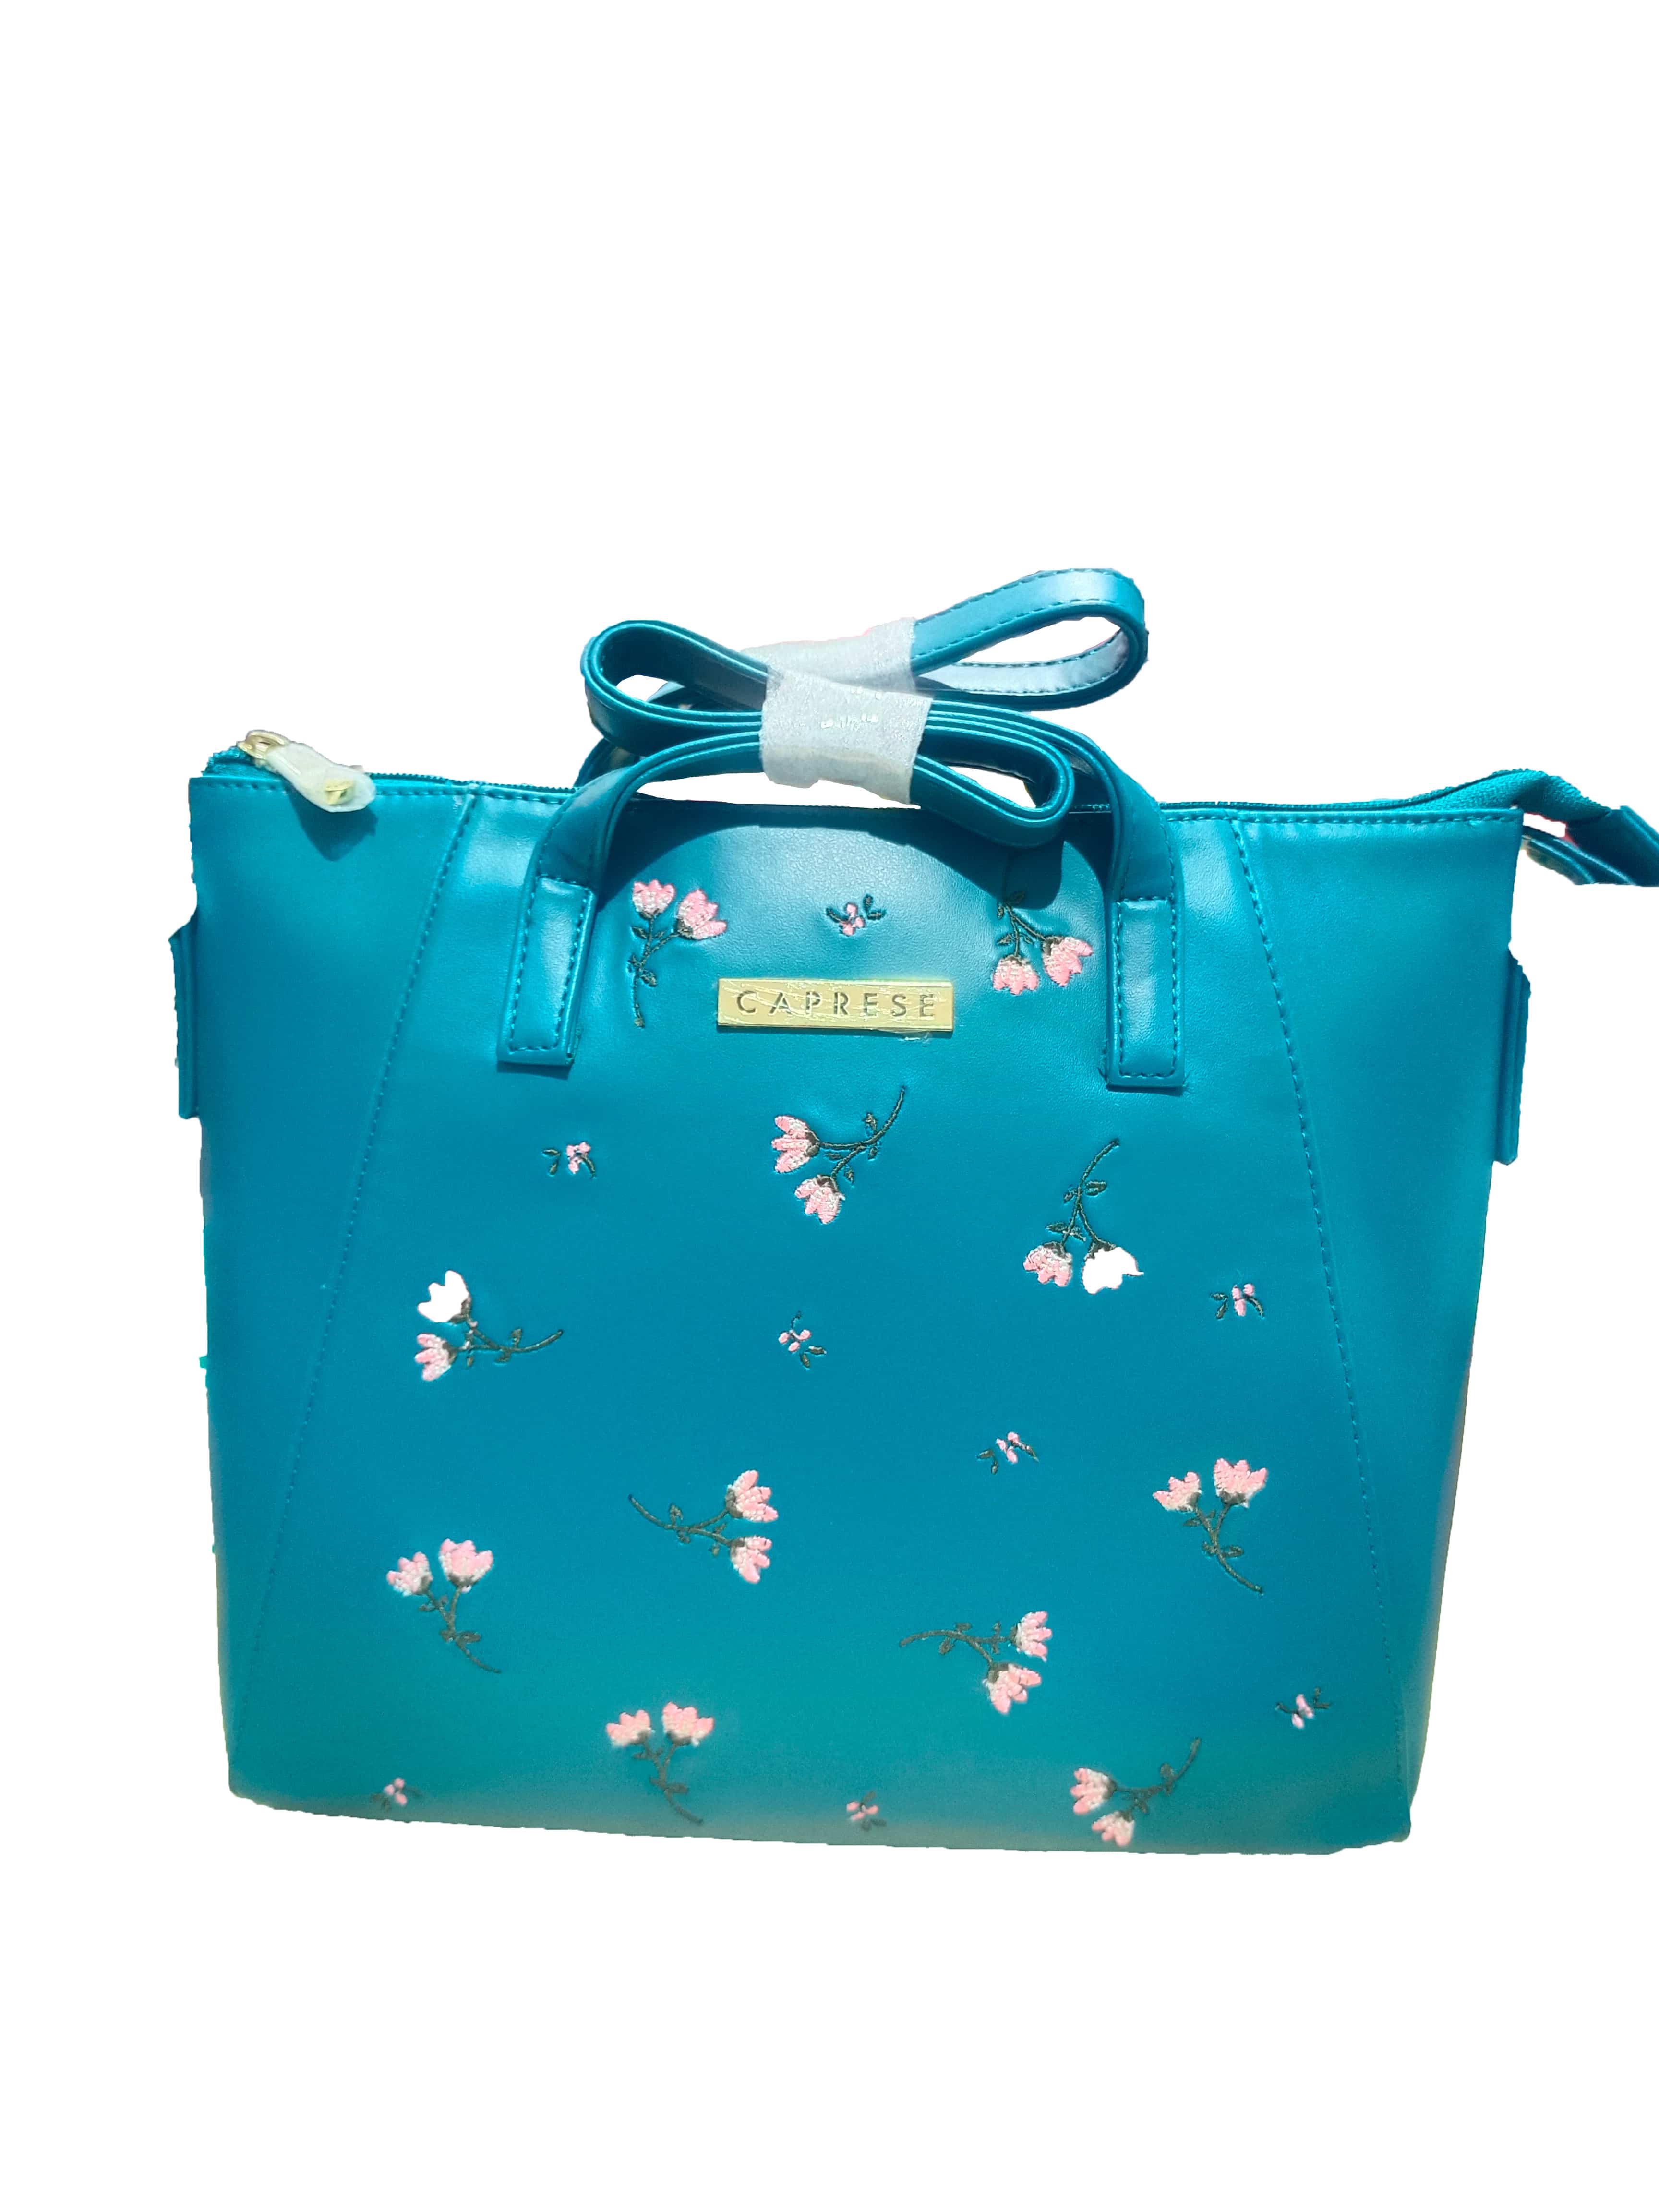 Aqua Handbag